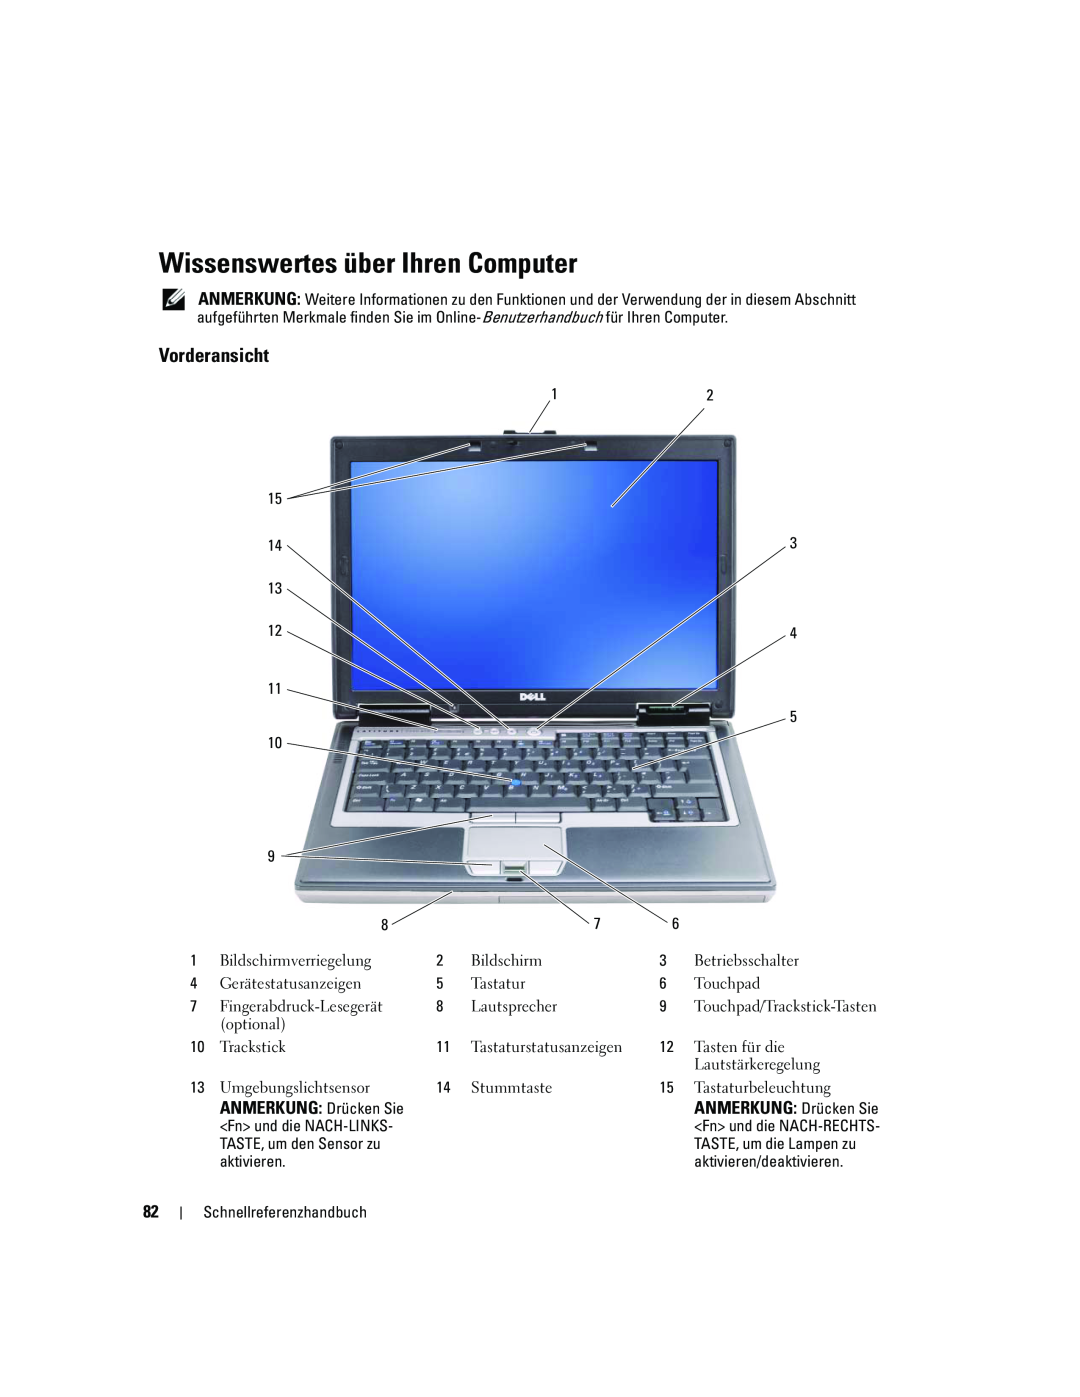 Dell ATG D620 manual Wissenswertes über Ihren Computer, Vorderansicht 